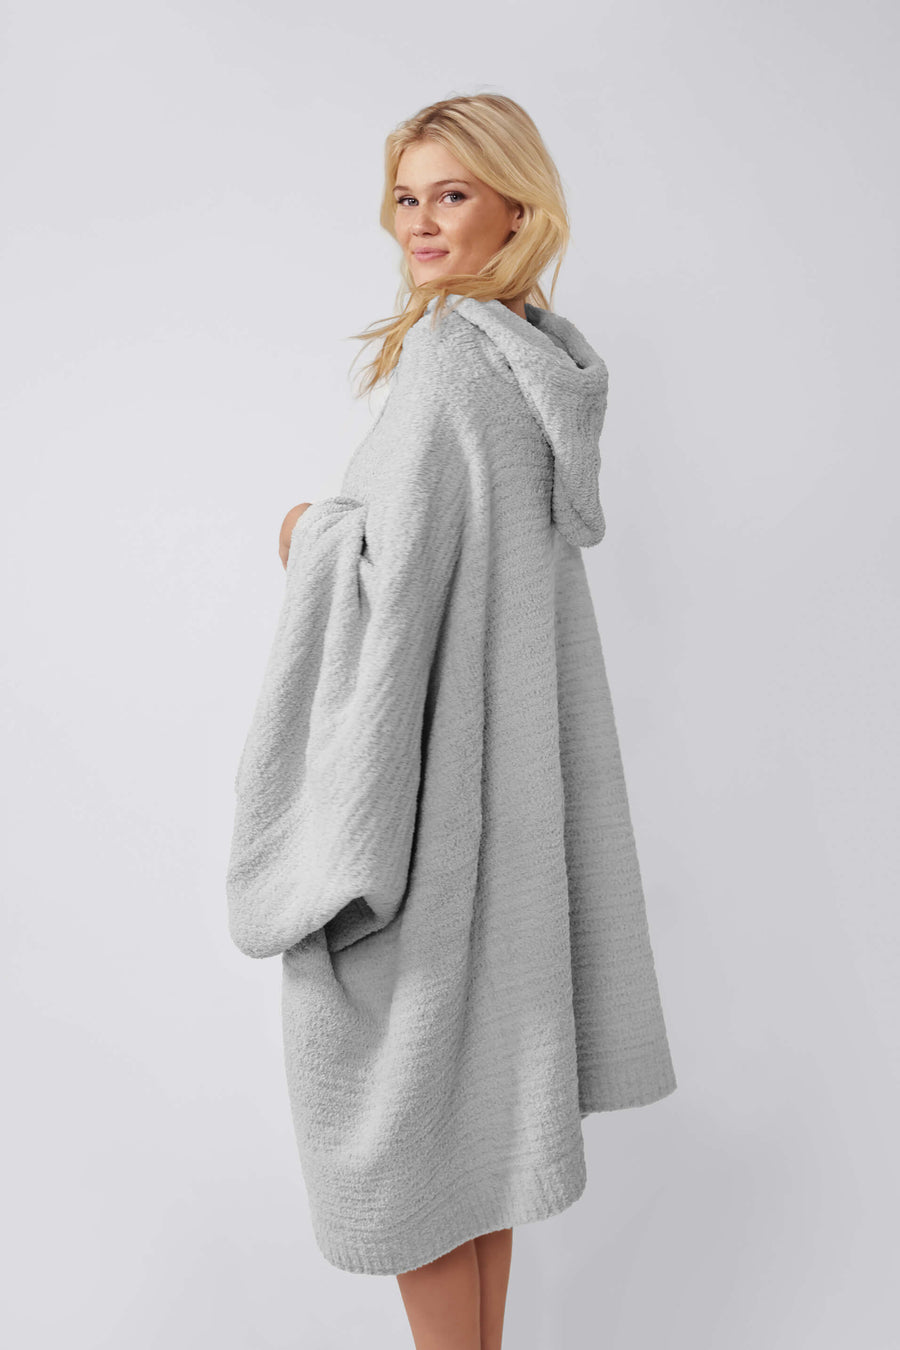 Snug Hooded Wearable Blanket Cloud Gray